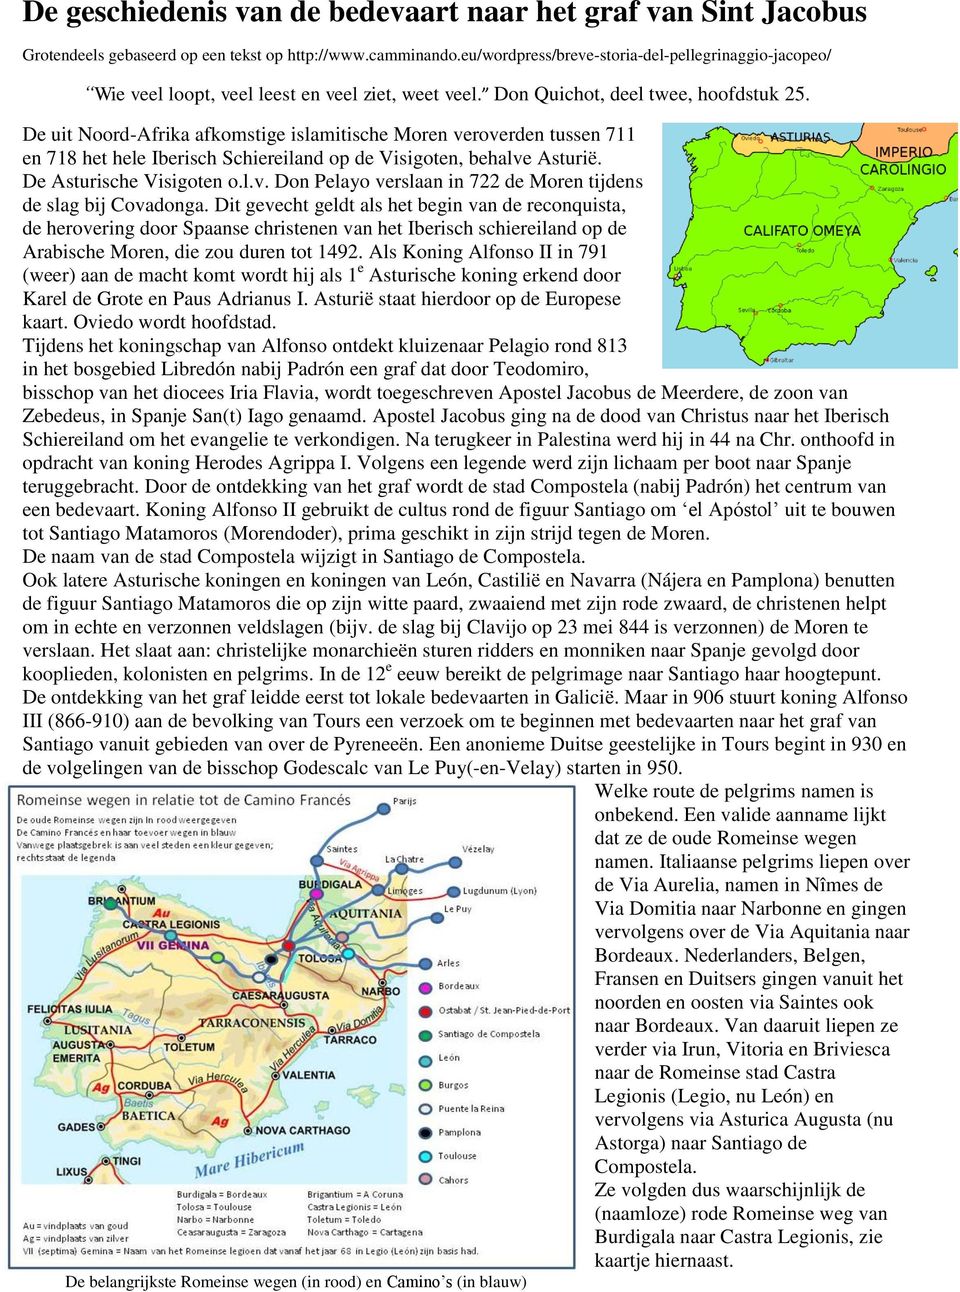 De uit Noord-Afrika afkomstige islamitische Moren veroverden tussen 711 en 718 het hele Iberisch Schiereiland op de Visigoten, behalve Asturië. De Asturische Visigoten o.l.v. Don Pelayo verslaan in 722 de Moren tijdens de slag bij Covadonga.